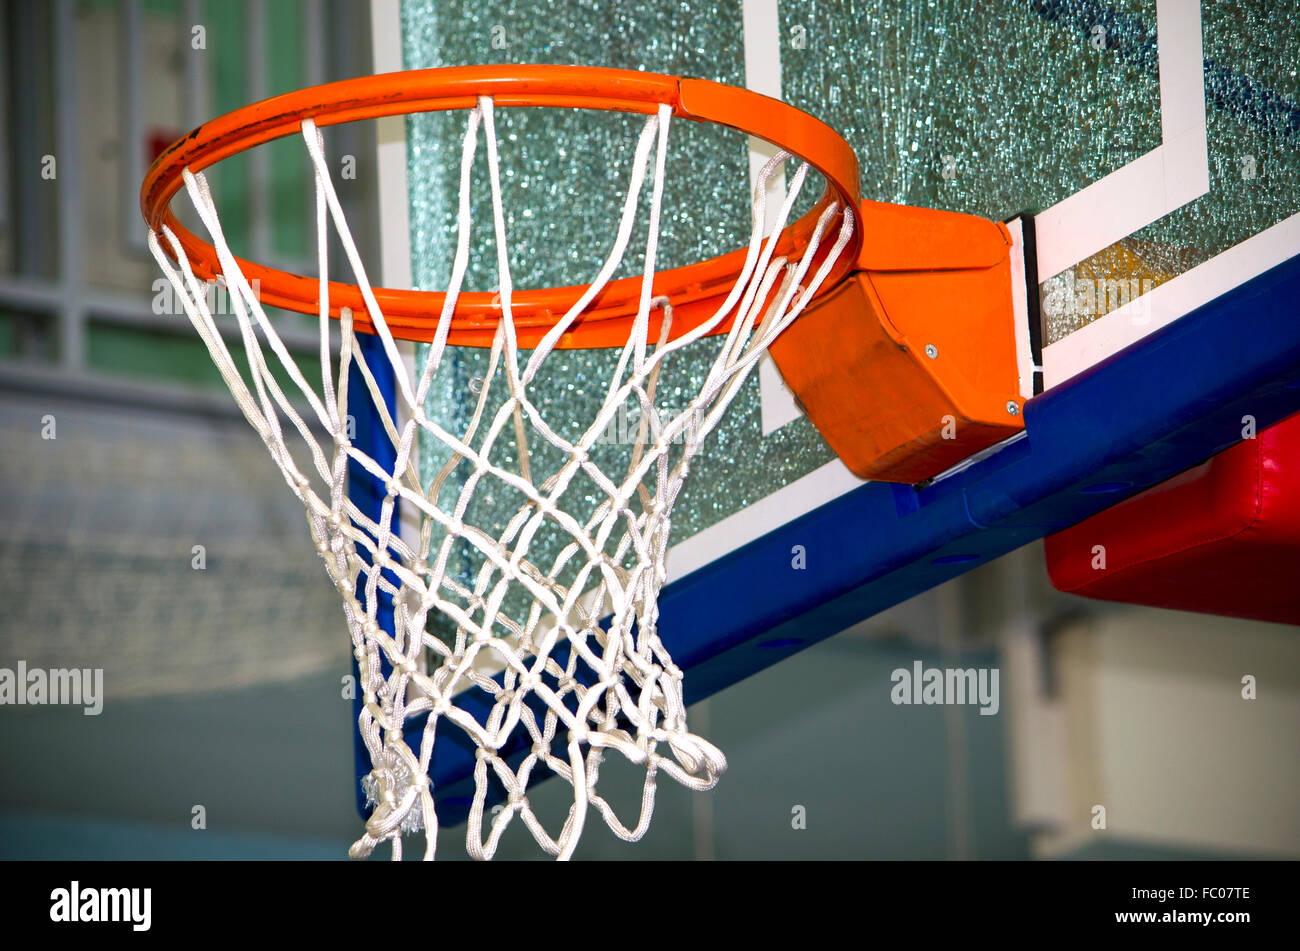 Anillo de baloncesto con una cuadrícula,un equipo deportivo,un anillo,una cuadrícula,juego,basketball,deporte,concursos,competencia,juego de baloncesto Foto de stock